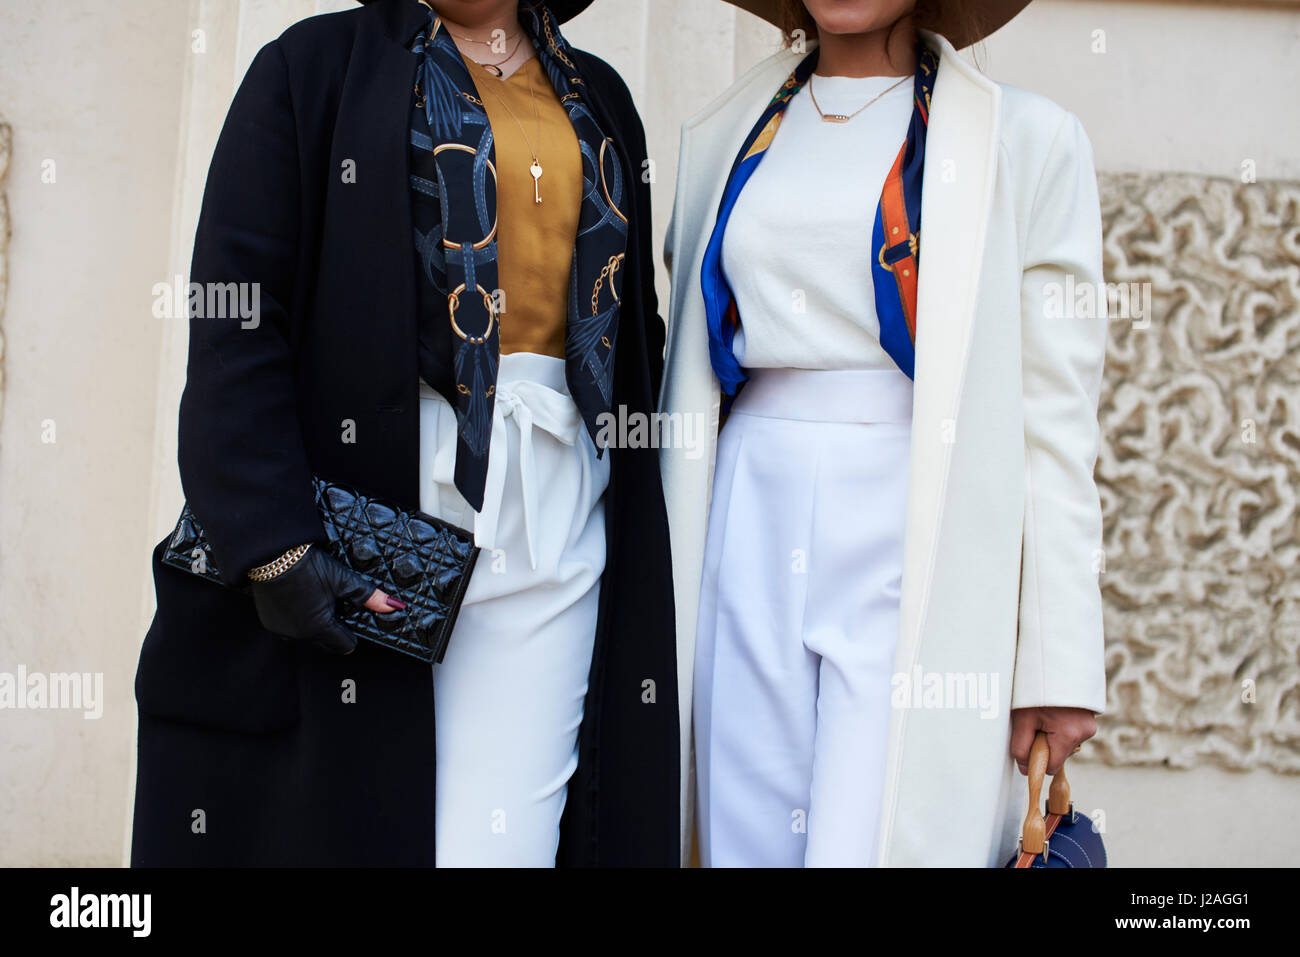 Londra - febbraio, 2017: sezione intermedia di due donne in strada tenendo borsette, una Chanel pochette sulla sinistra, mentre la donna sulla destra indossa una cintura Chopard, durante la London Fashion Week, orizzontale, vista frontale Foto Stock